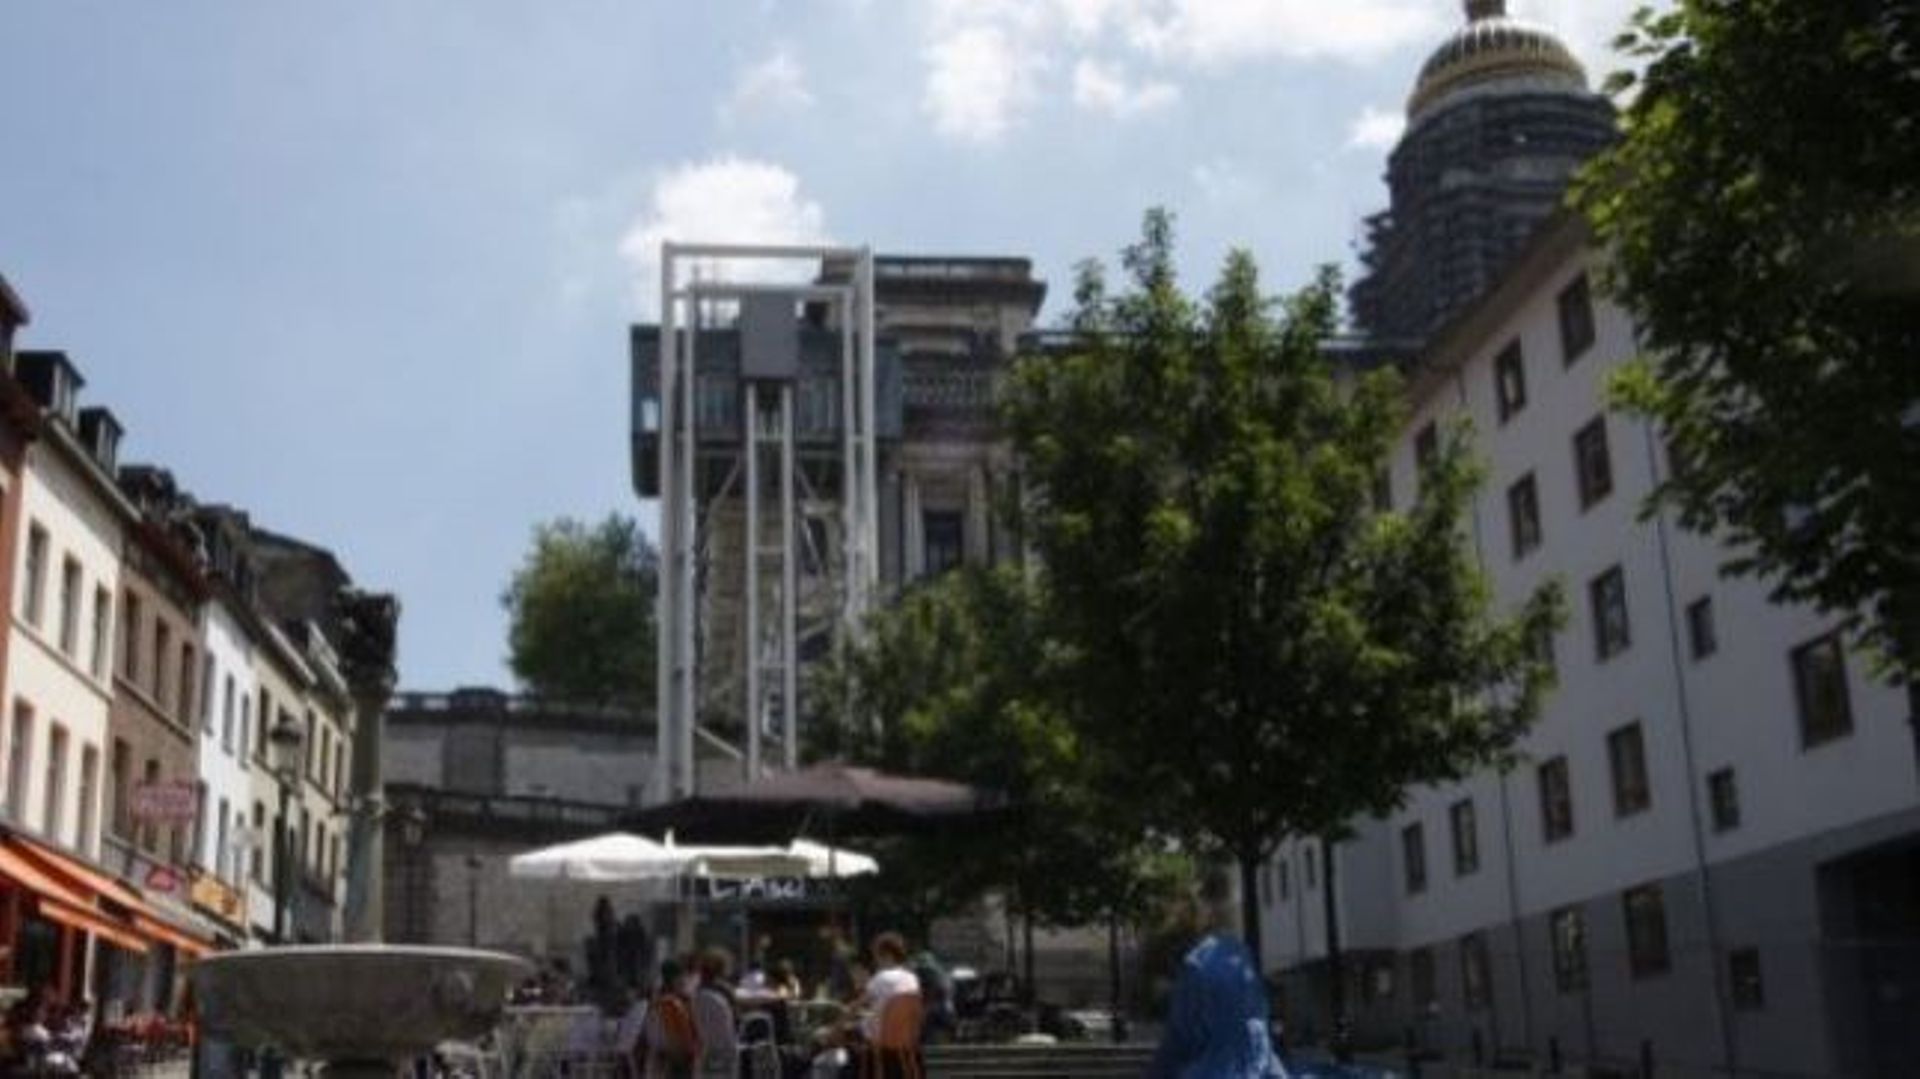 La tour de l’actuel ascenseur avec le palais de justice juste derrière, vus depuis le quartier des Marolles